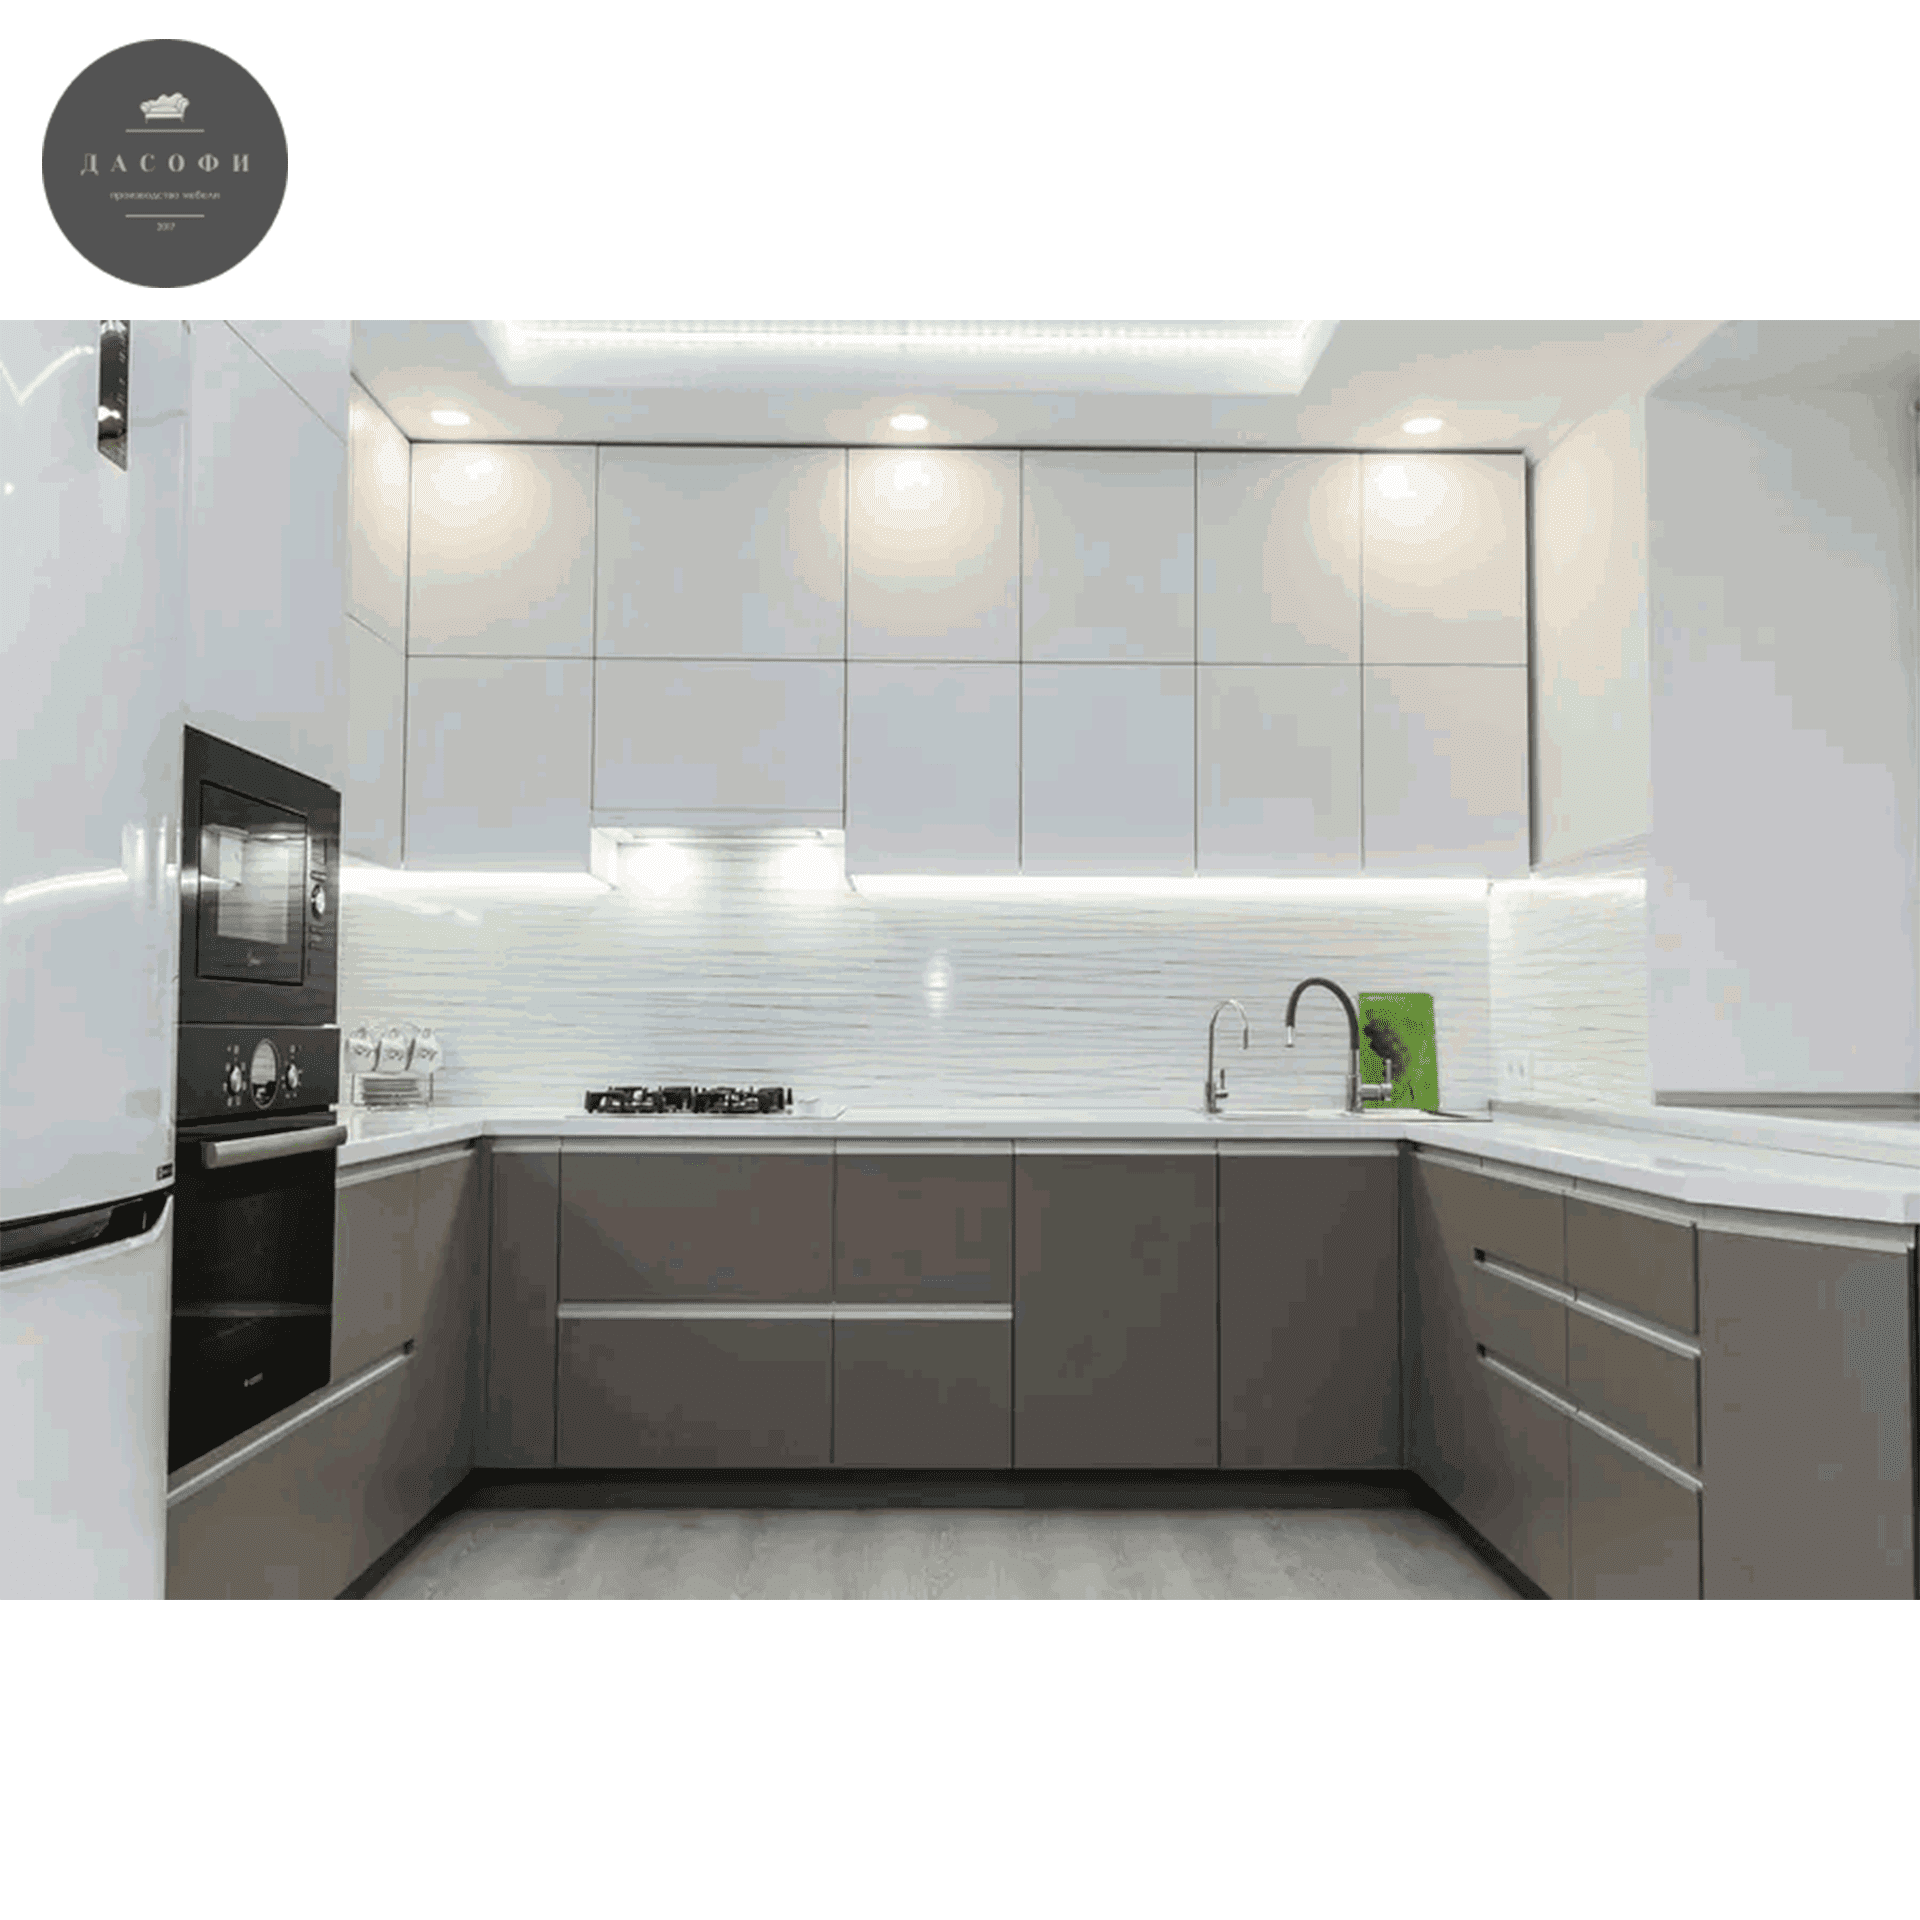 кухни дизайн угловые современные белый с сочетанием серый